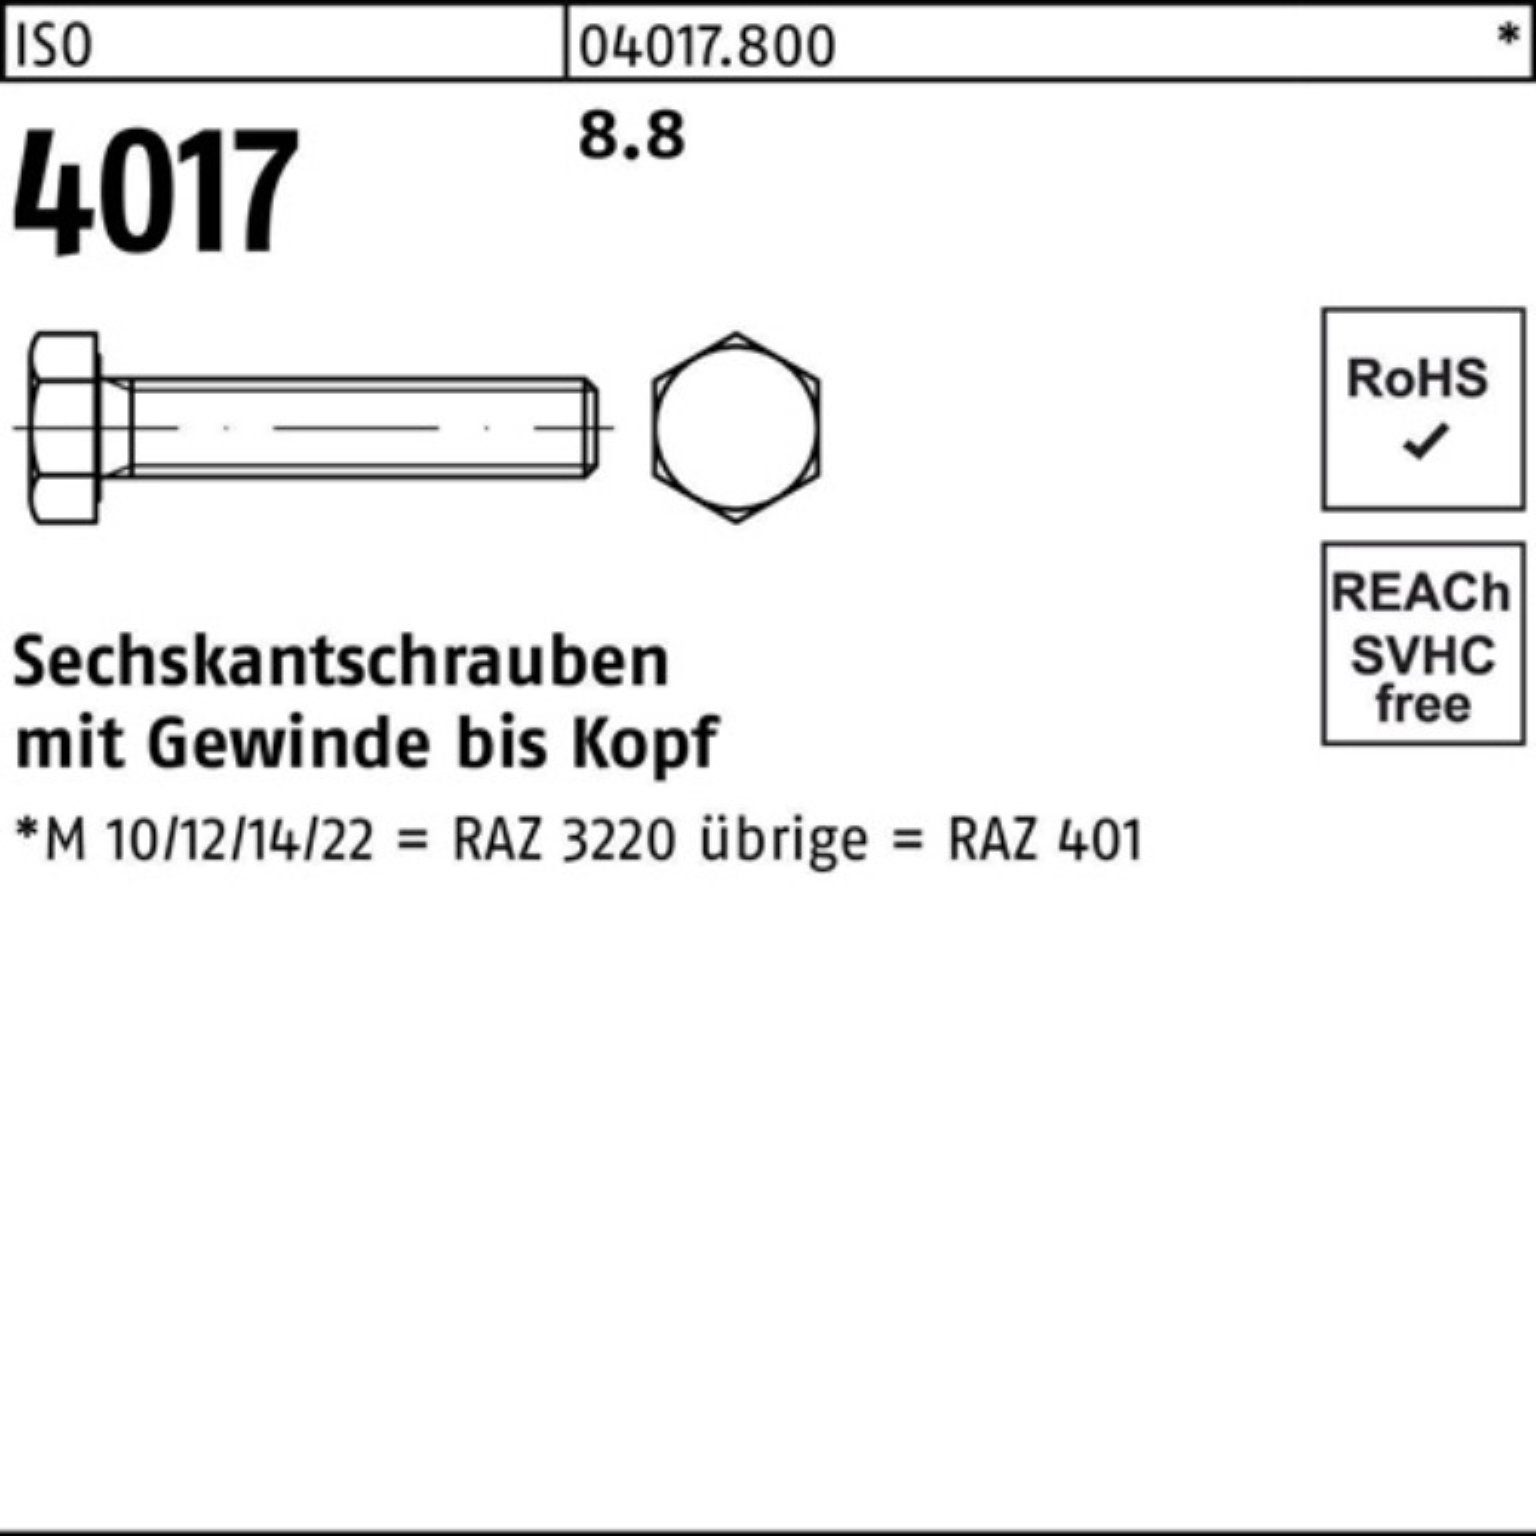 M48x Stück 4017 ISO 100er 401 Sechskantschraube ISO 1 VG 190 Bufab 8.8 Sechskantschraube Pack